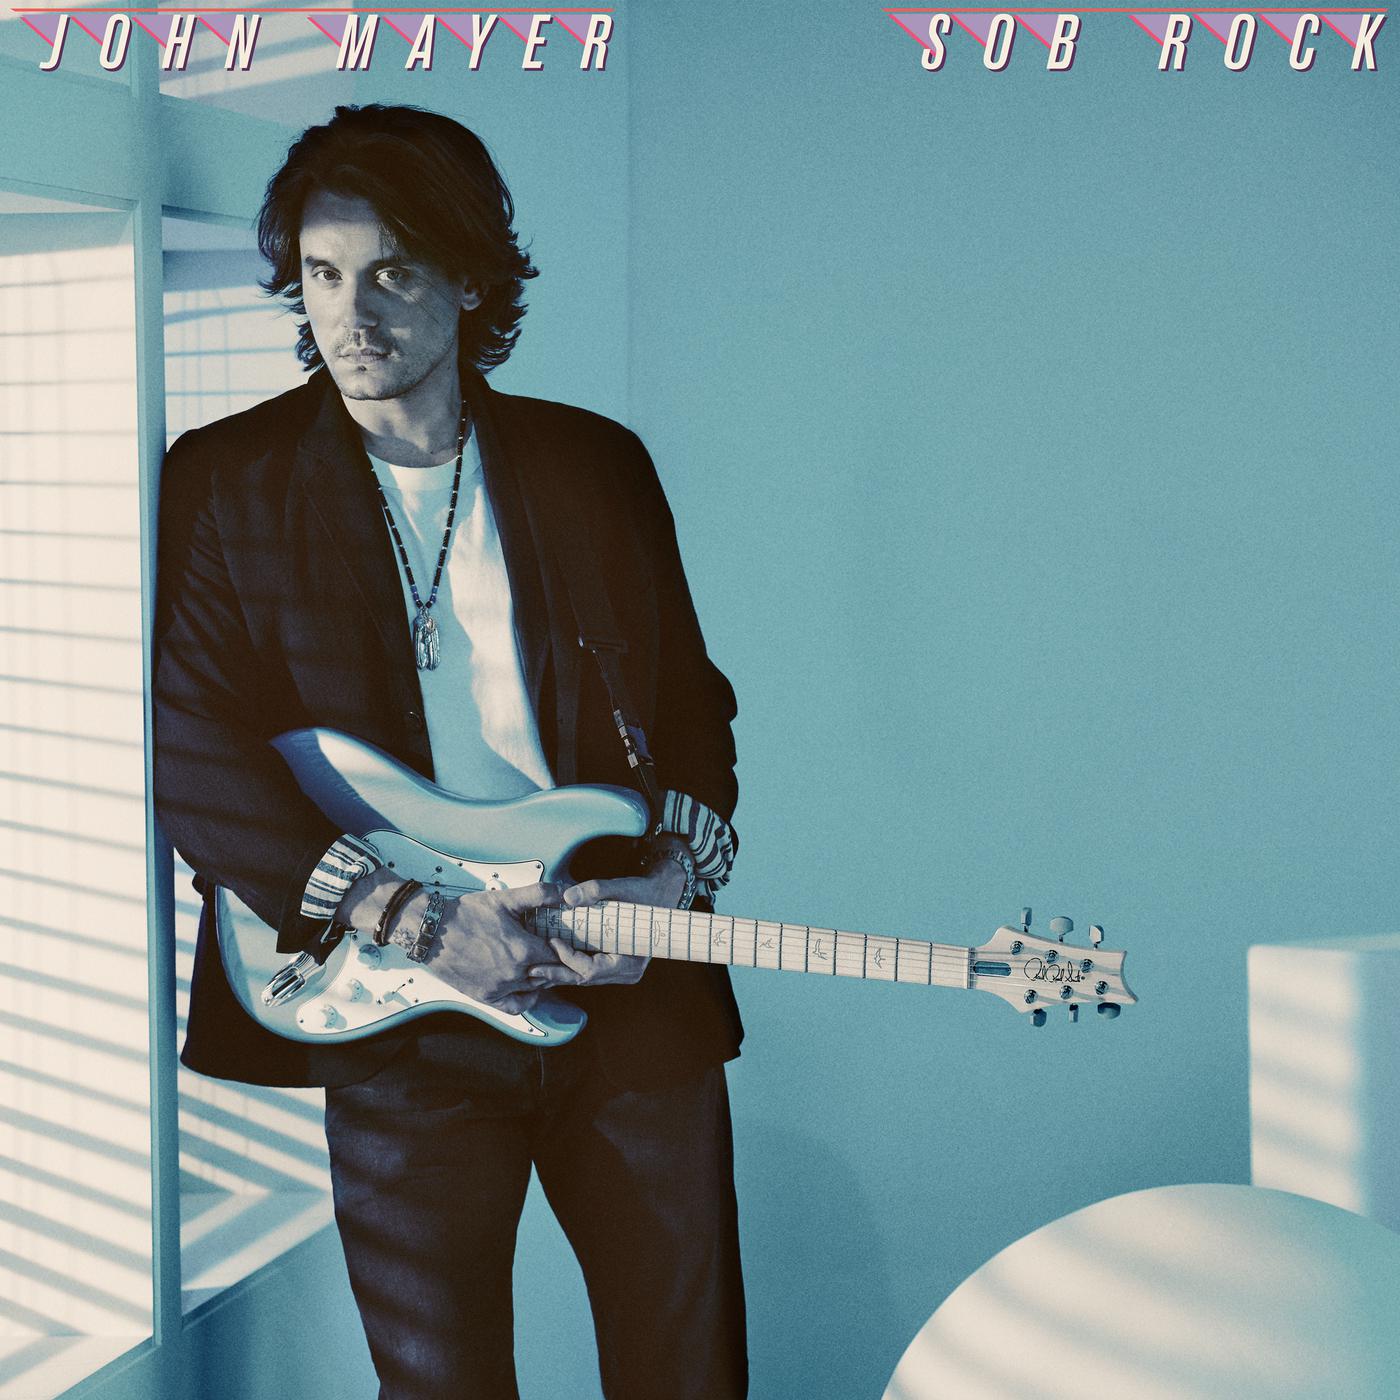 Wild Blue歌词 歌手John Mayer-专辑Sob Rock-单曲《Wild Blue》LRC歌词下载